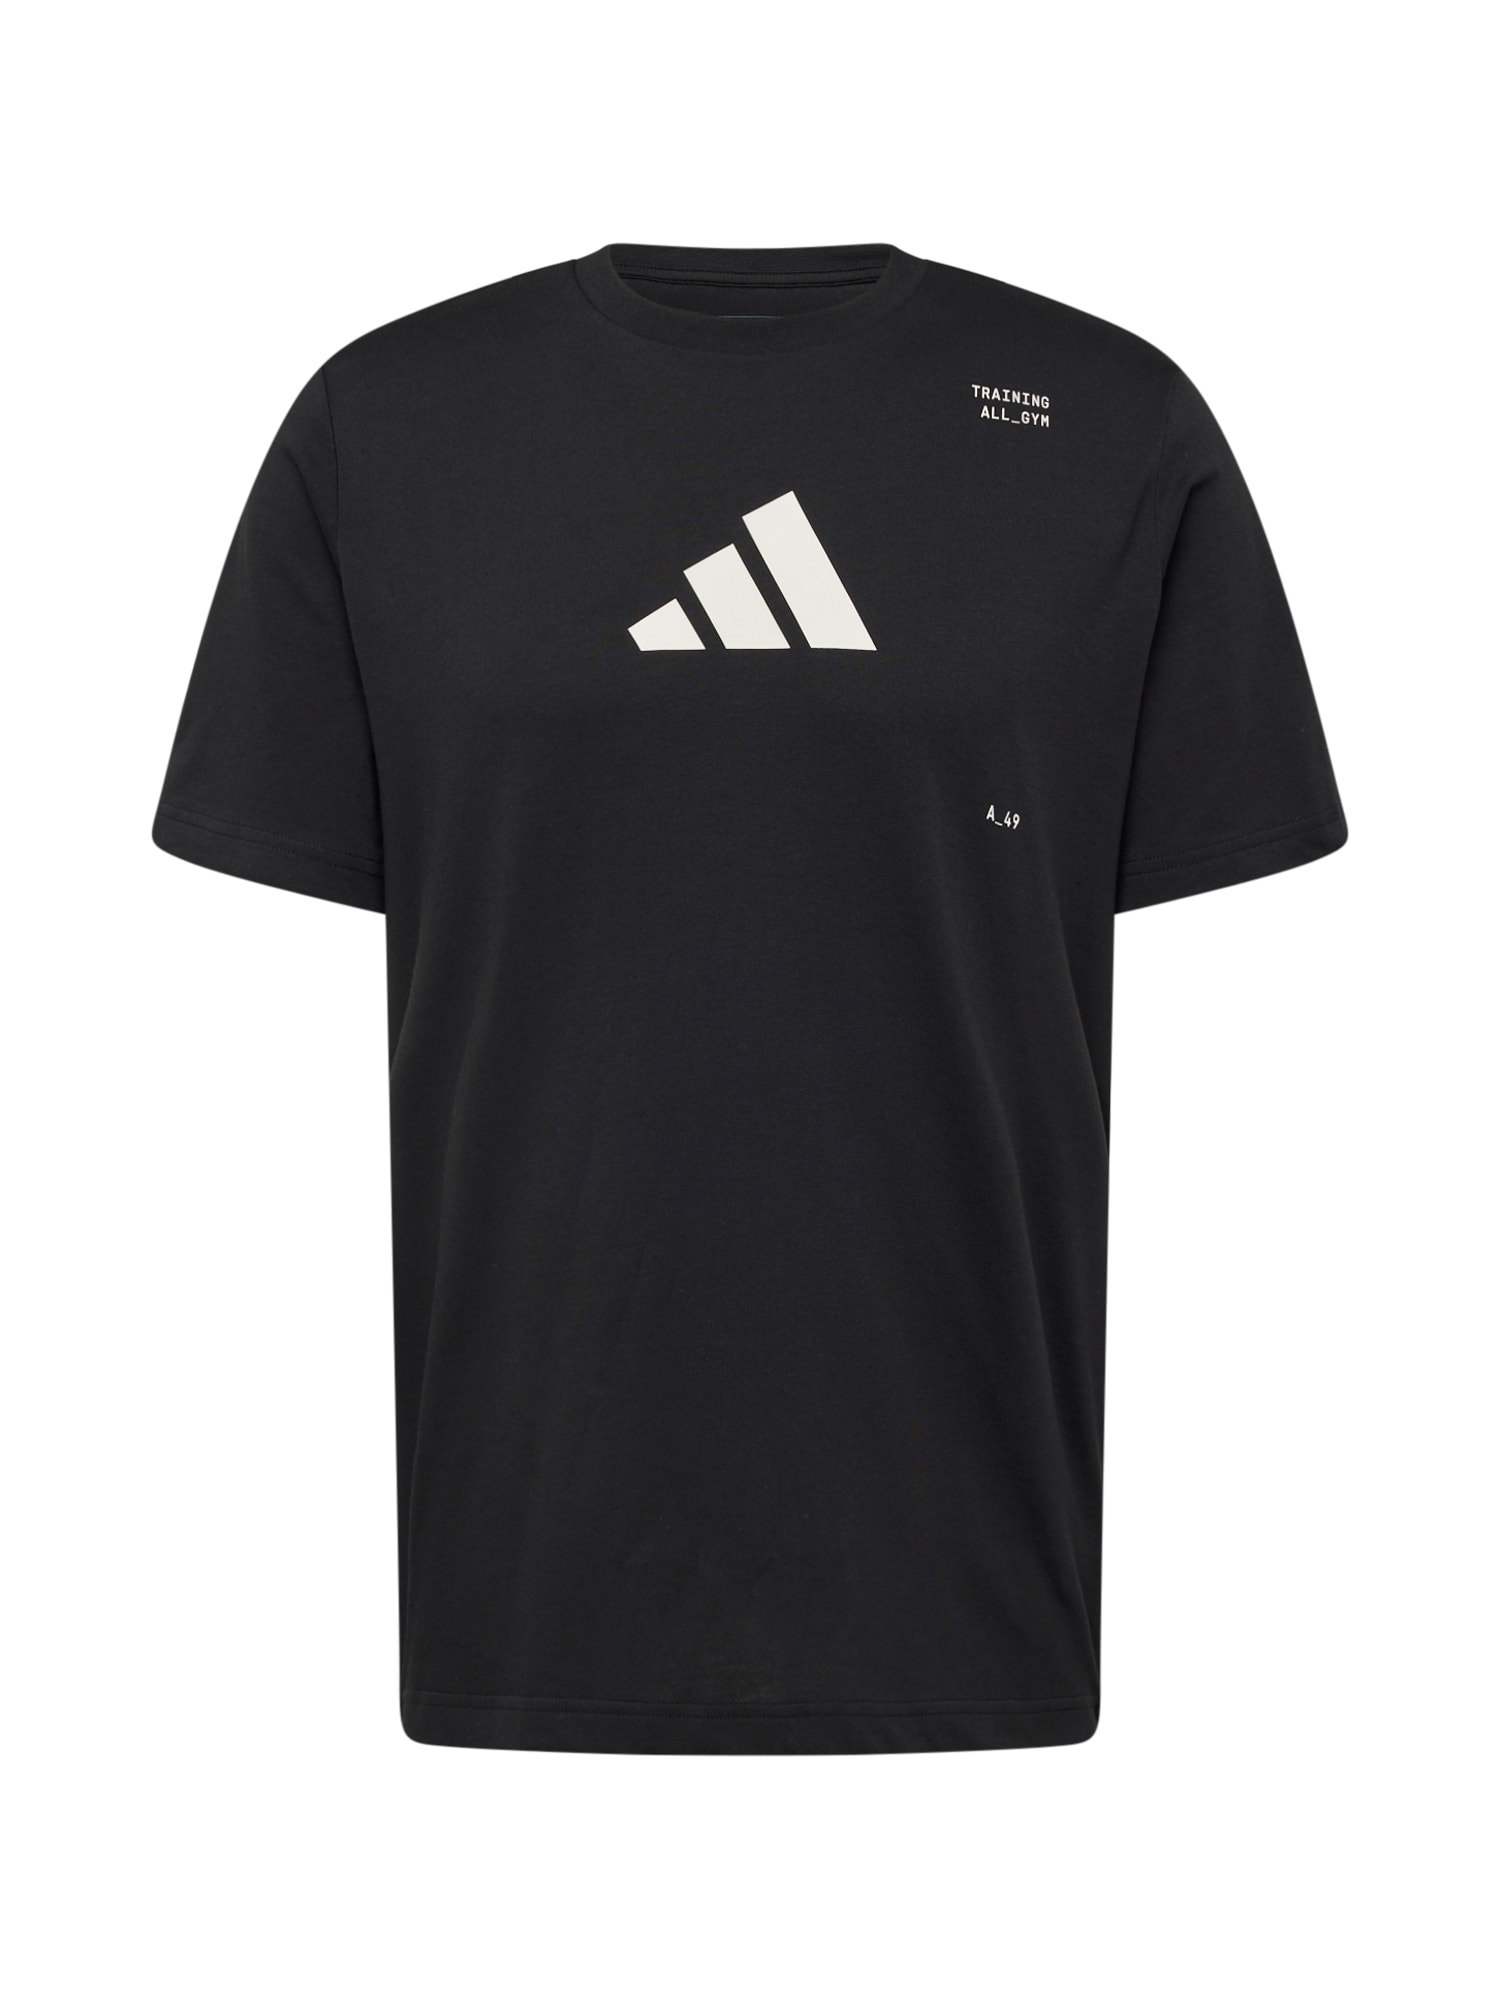 ADIDAS PERFORMANCE Tehnička sportska majica  crna / bijela